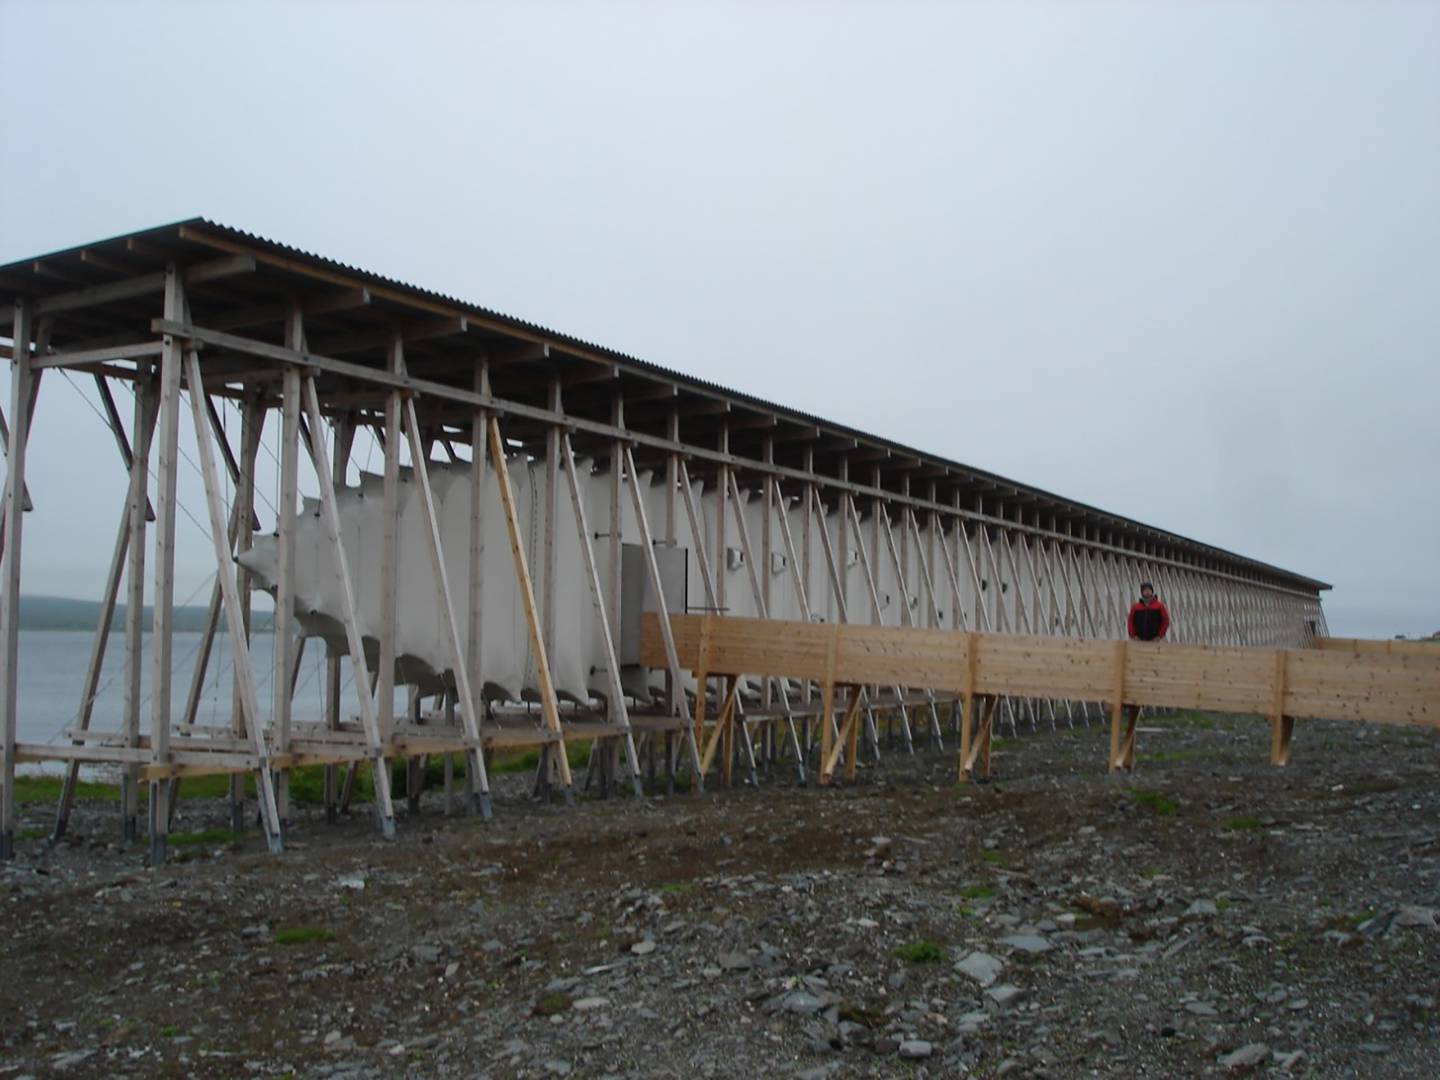 Steilneset minnested, også kjent som Heksemonumentet i Vardø. Arkitekt Peter Zumthor